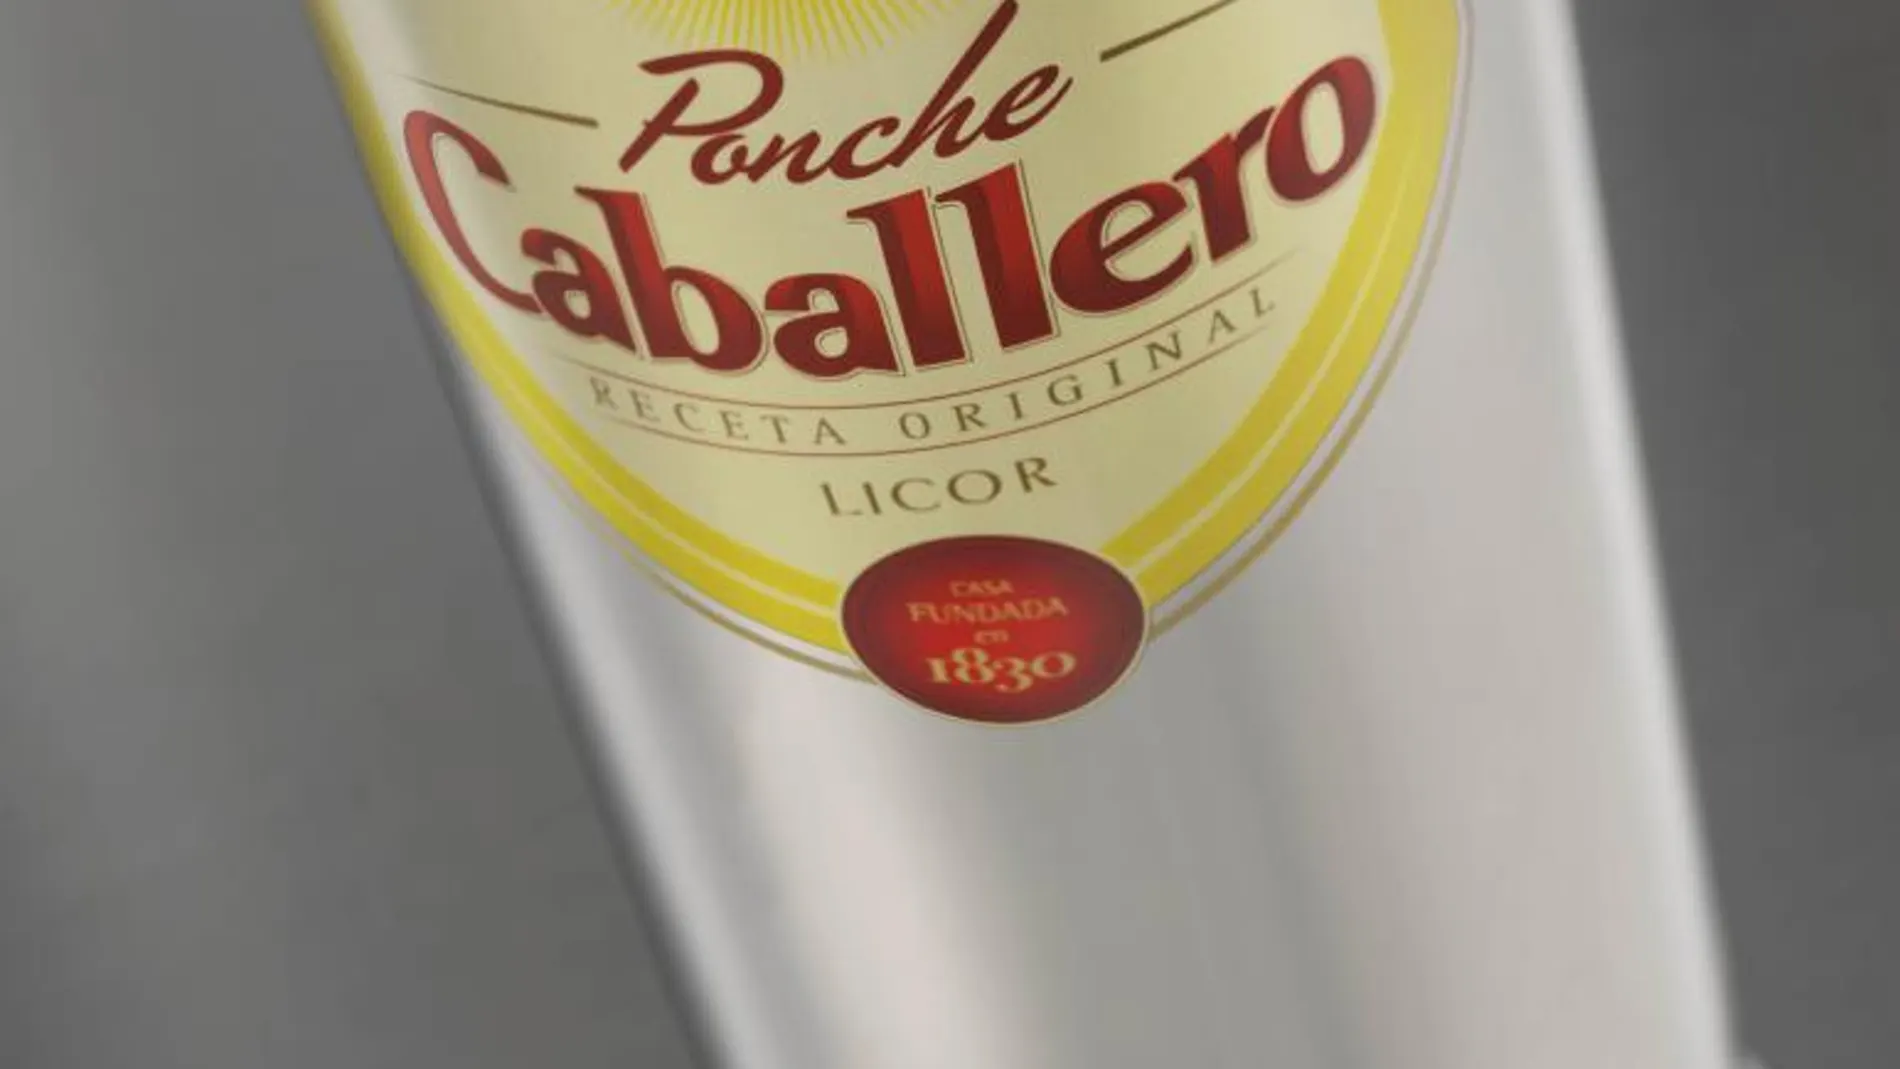 Ponche Caballero estrena botella en su 185 aniversario